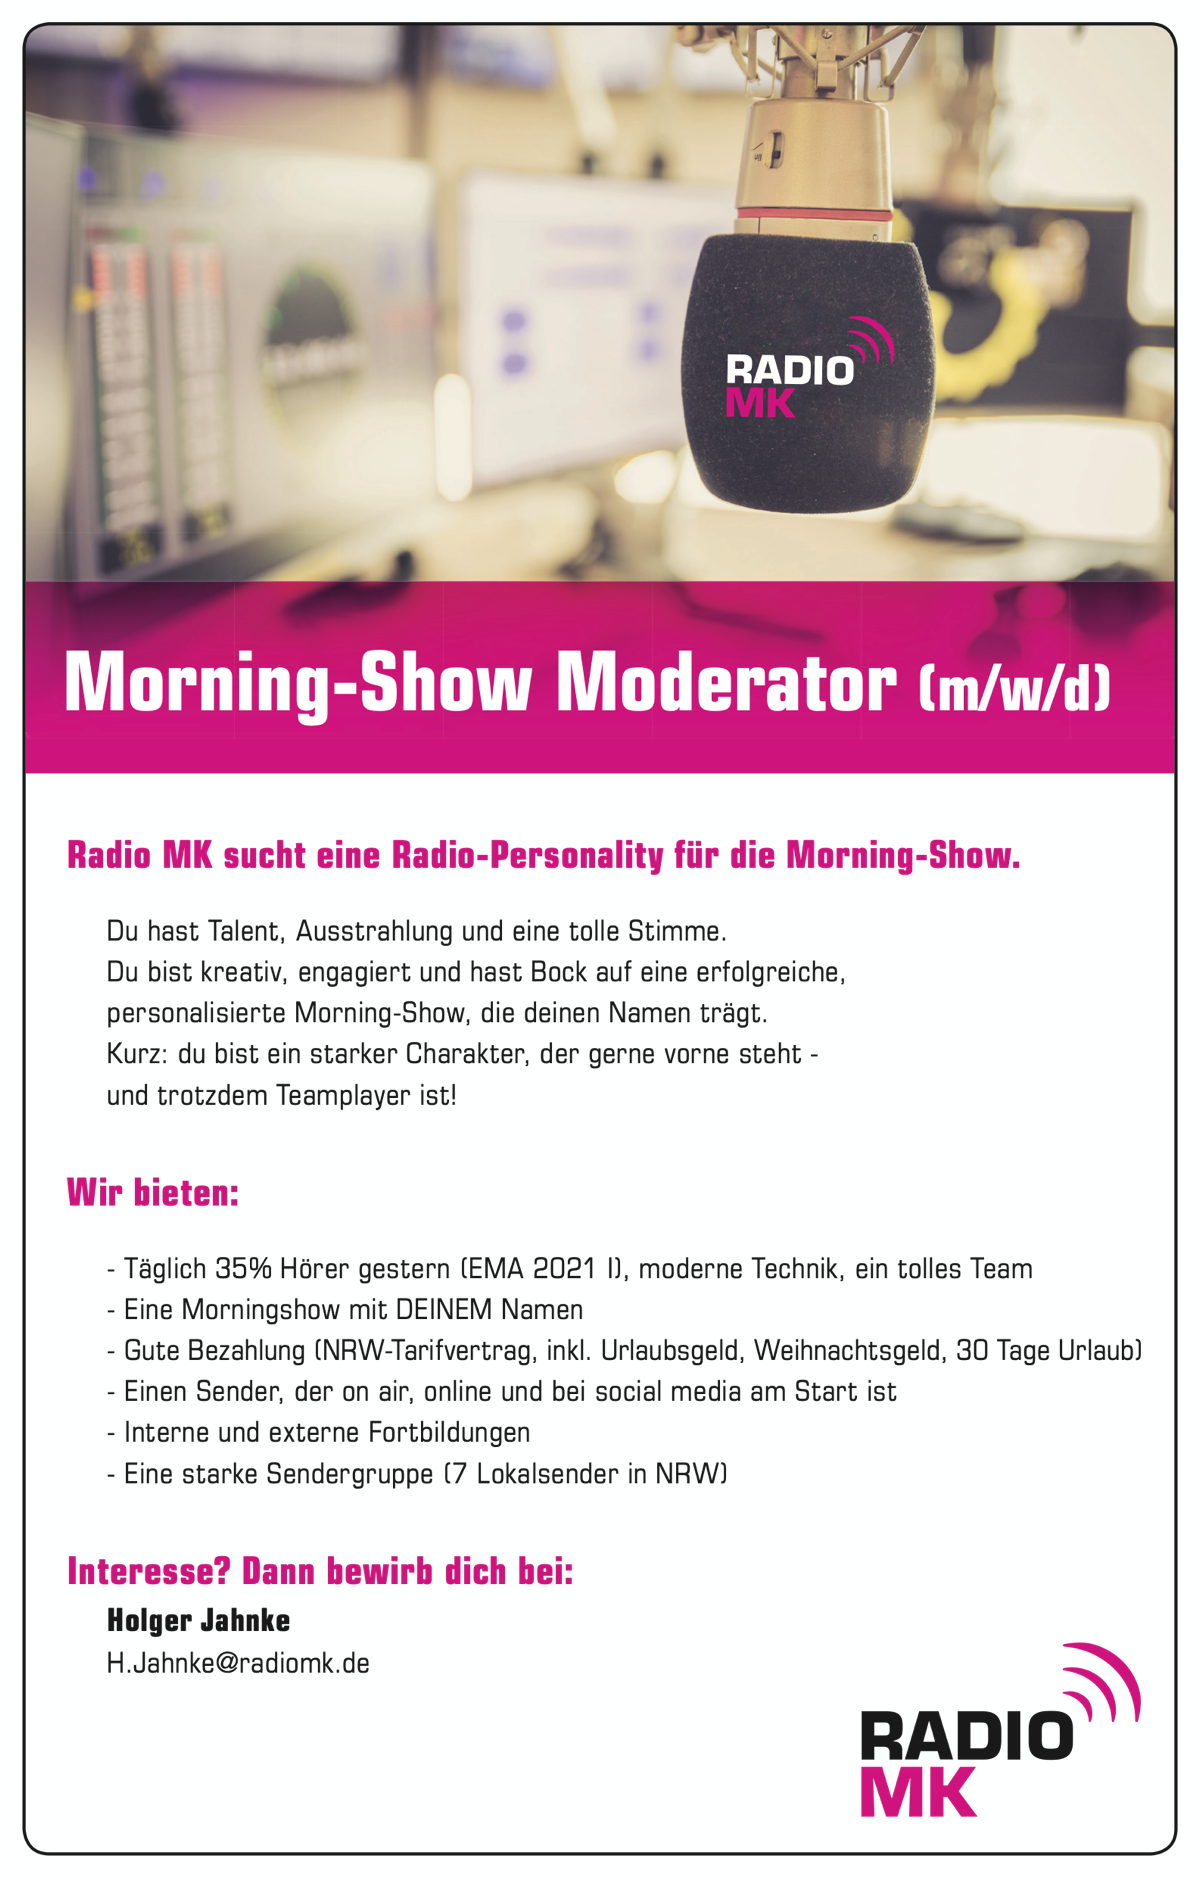 Radio MK sucht Radio-Personality für Morning-Show (m/w/d)